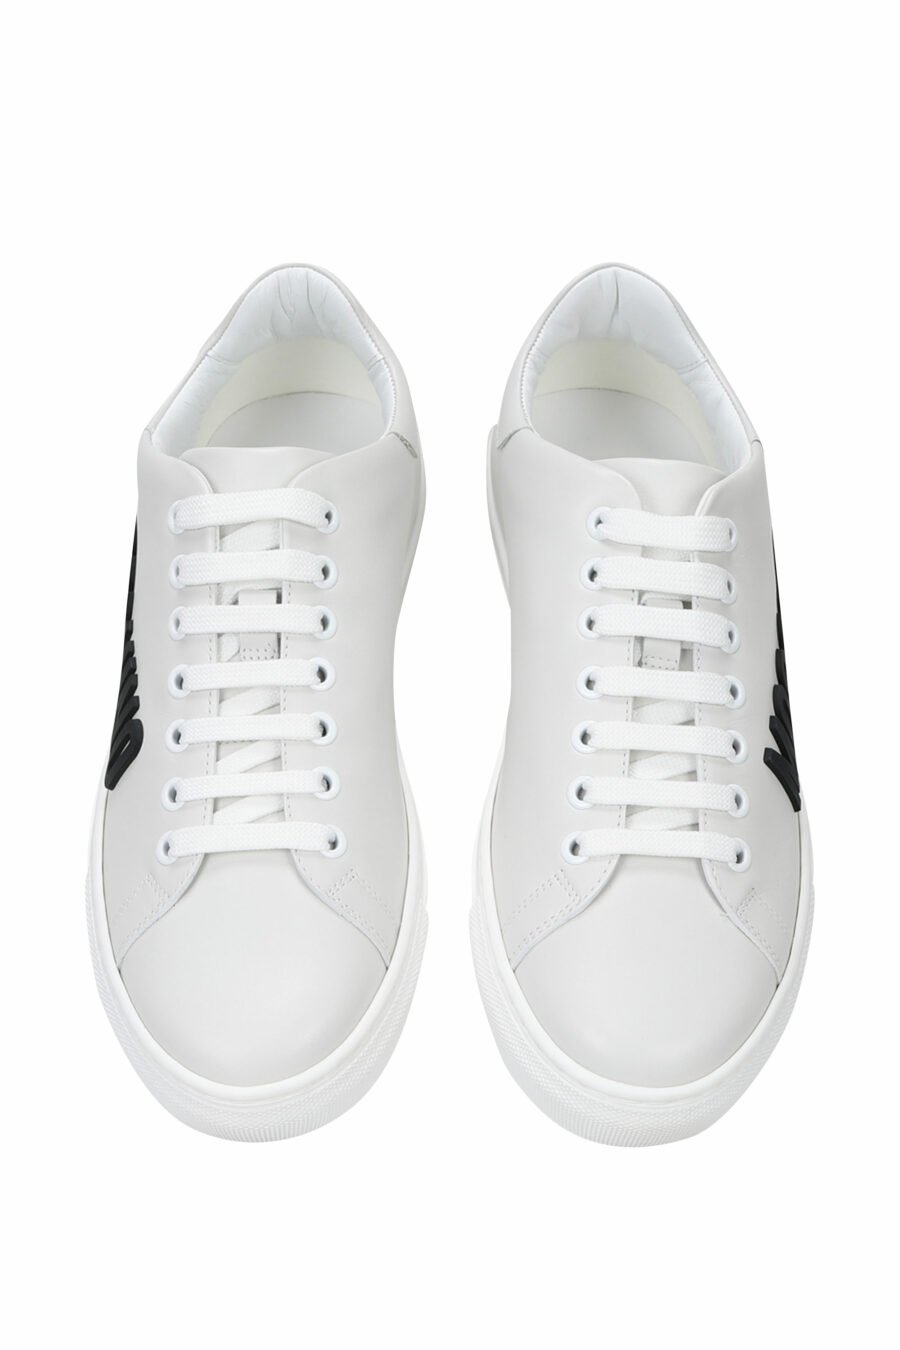 Zapatillas blancas con logo negro "lettering" - 8054653099241 4